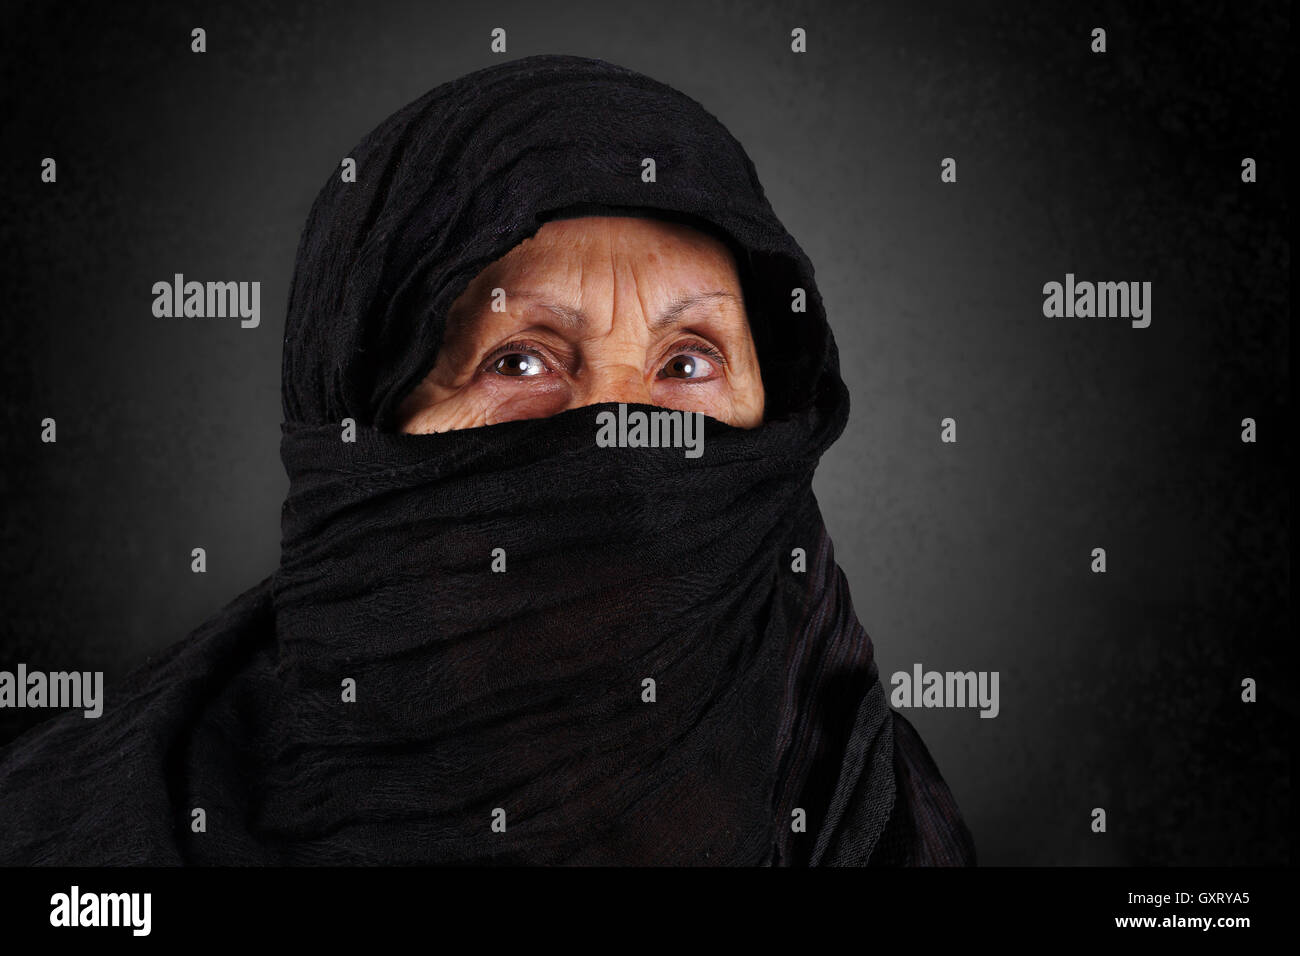 Hauts femme musulmane avec hijab noir Banque D'Images